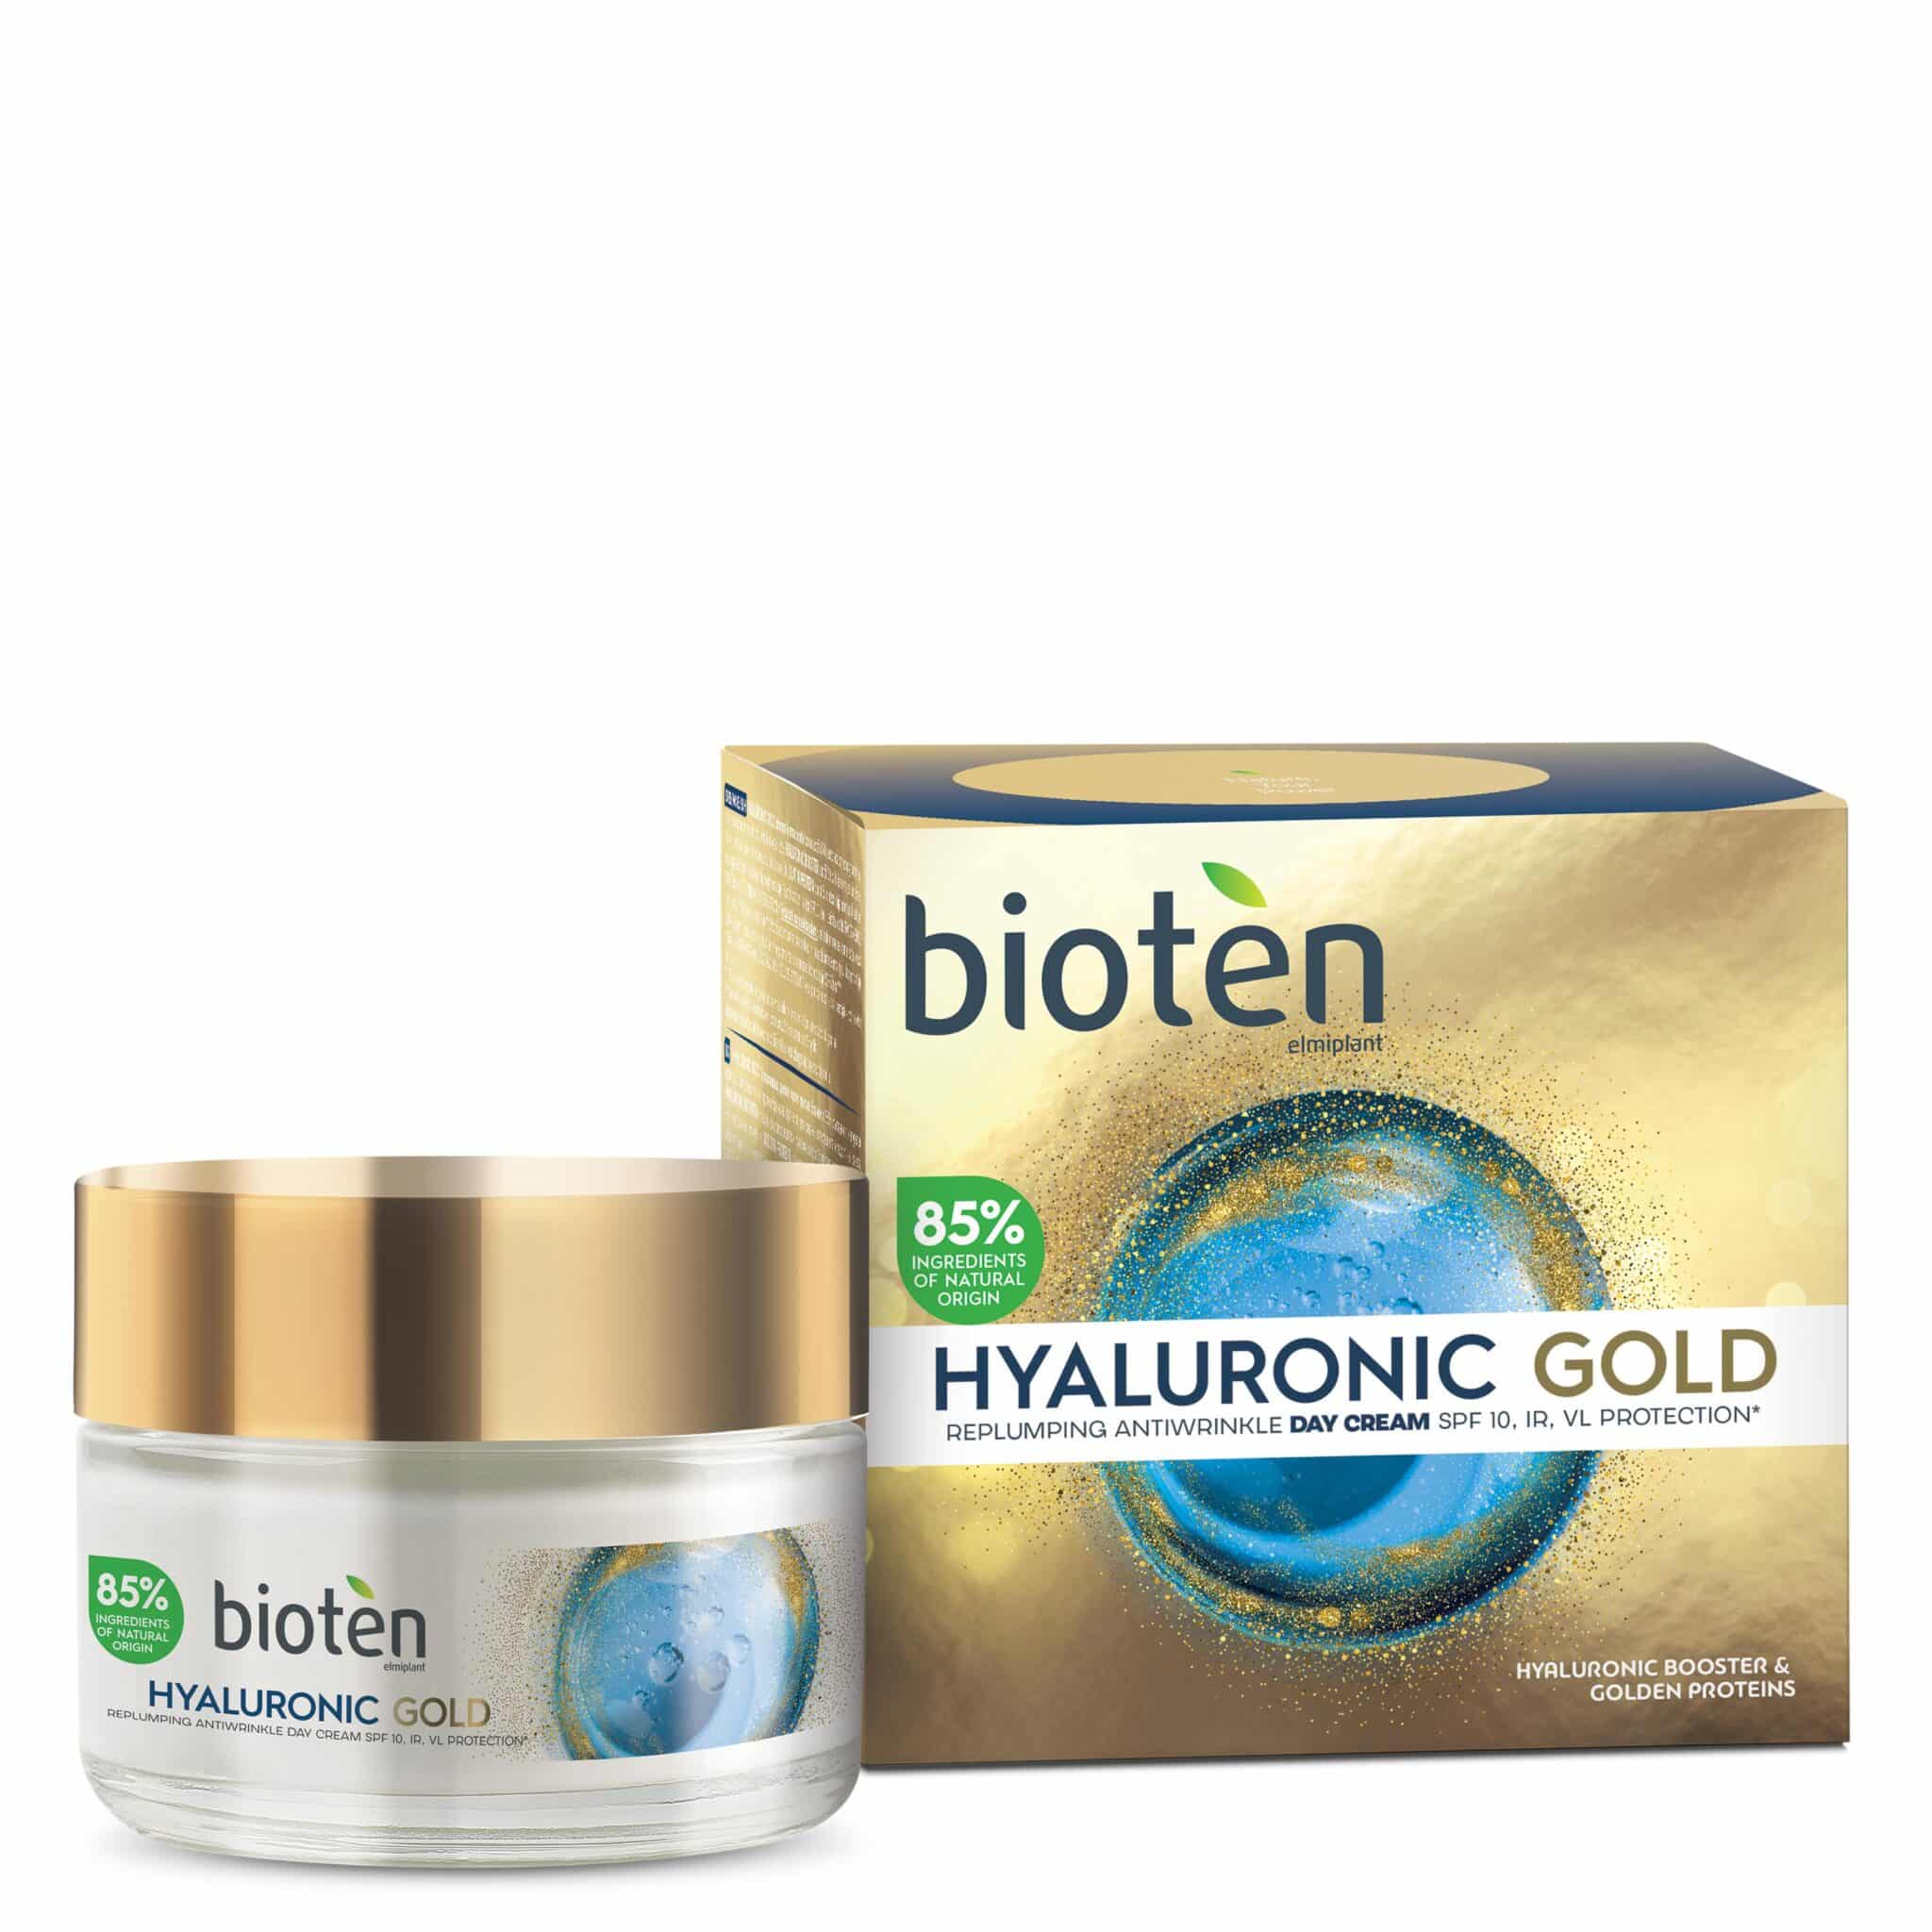 Bioten hyaluronic gold αντιρυτιδική κρέμα ημέρας 50ml